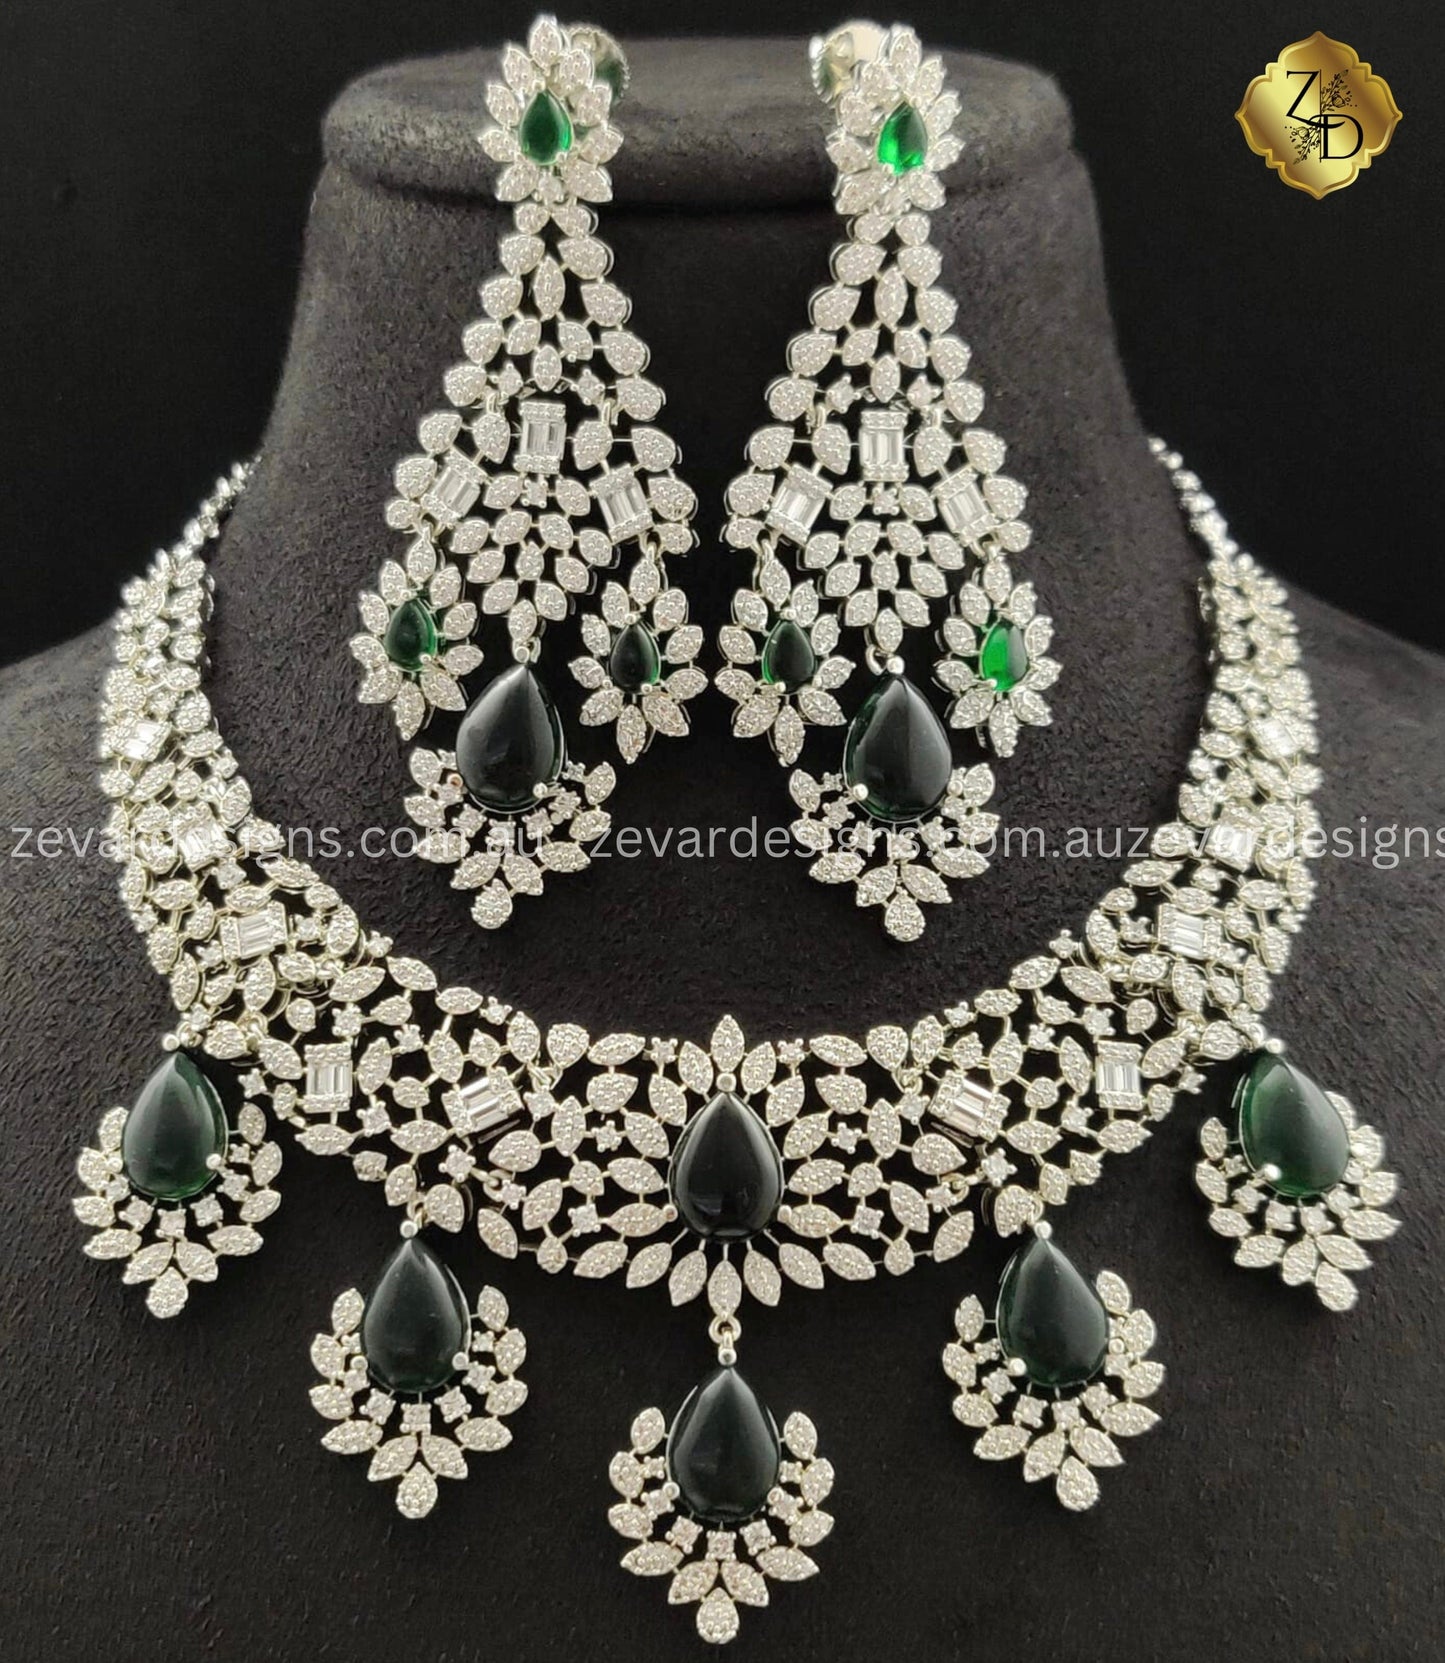 Zevar Designs Necklace Sets - AD Bridal AD/Zircon Necklace Set - Emerald Green